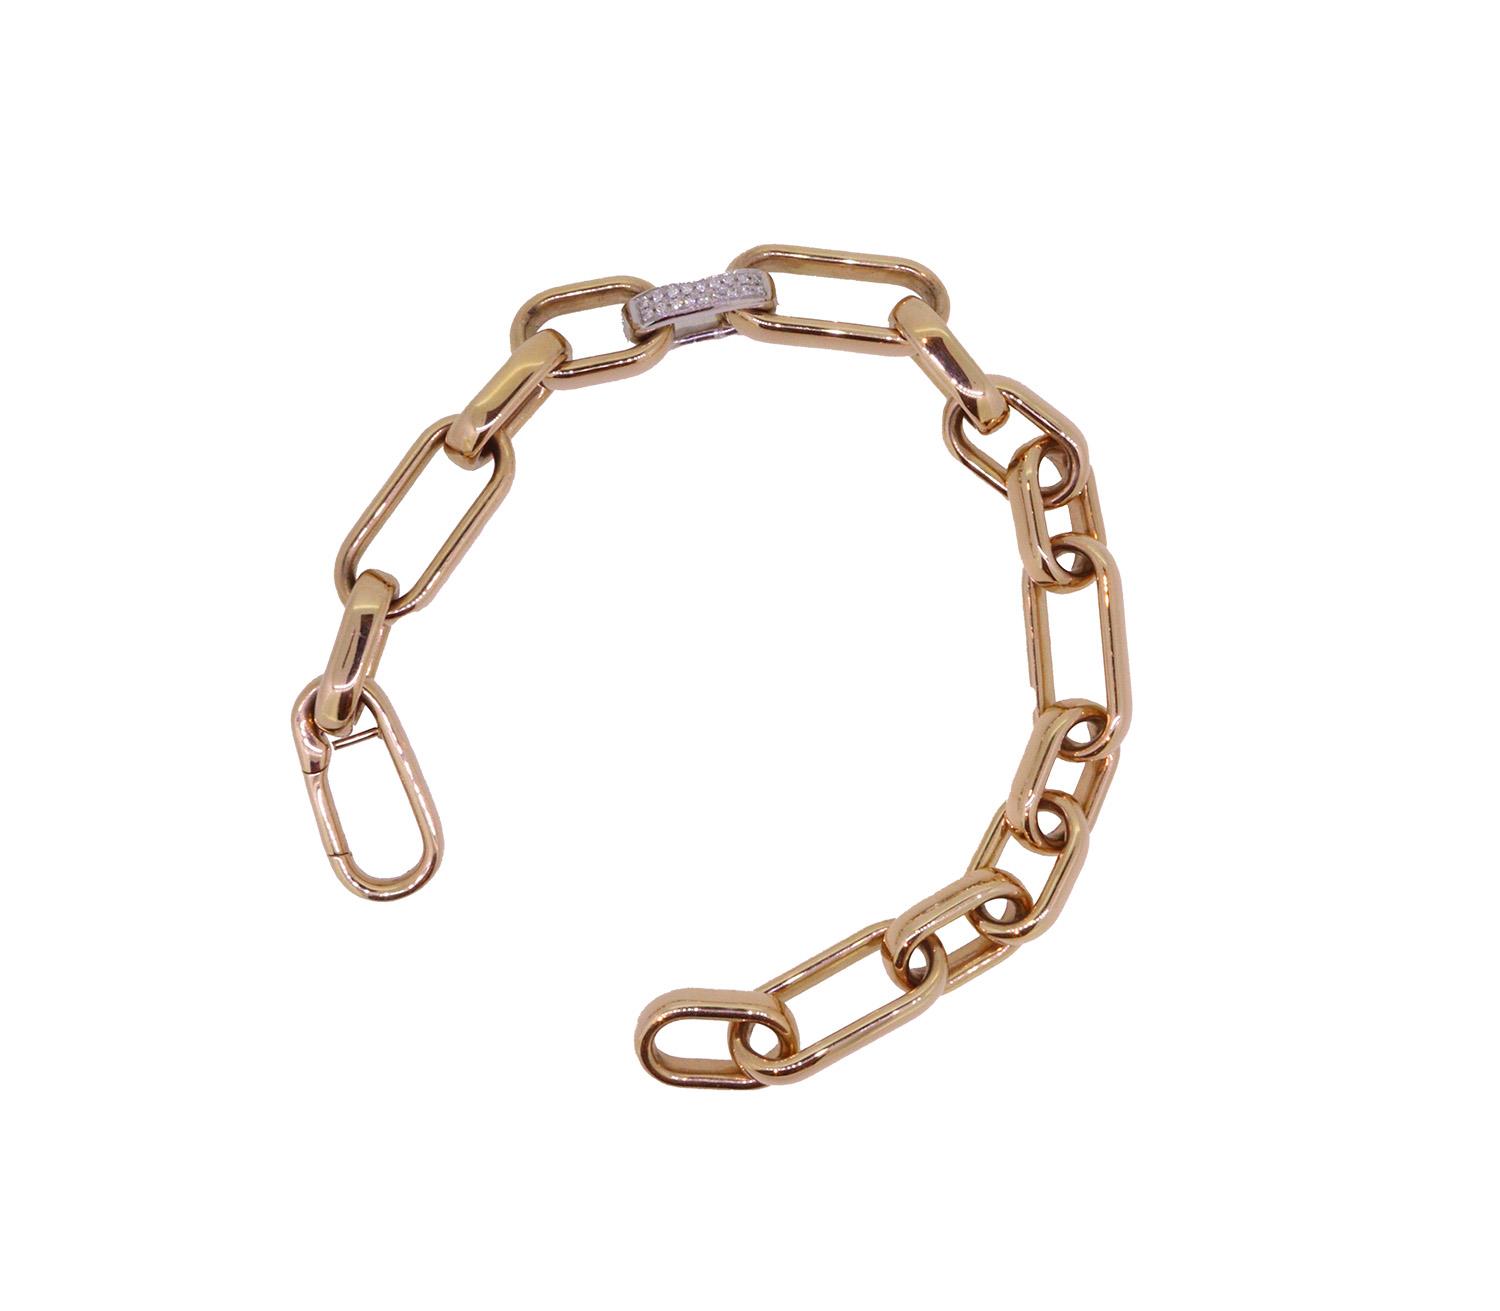 Armband Brillanten Pavé 18kt Rosé und Weißgold - Individuelle Marken - 835BX0538